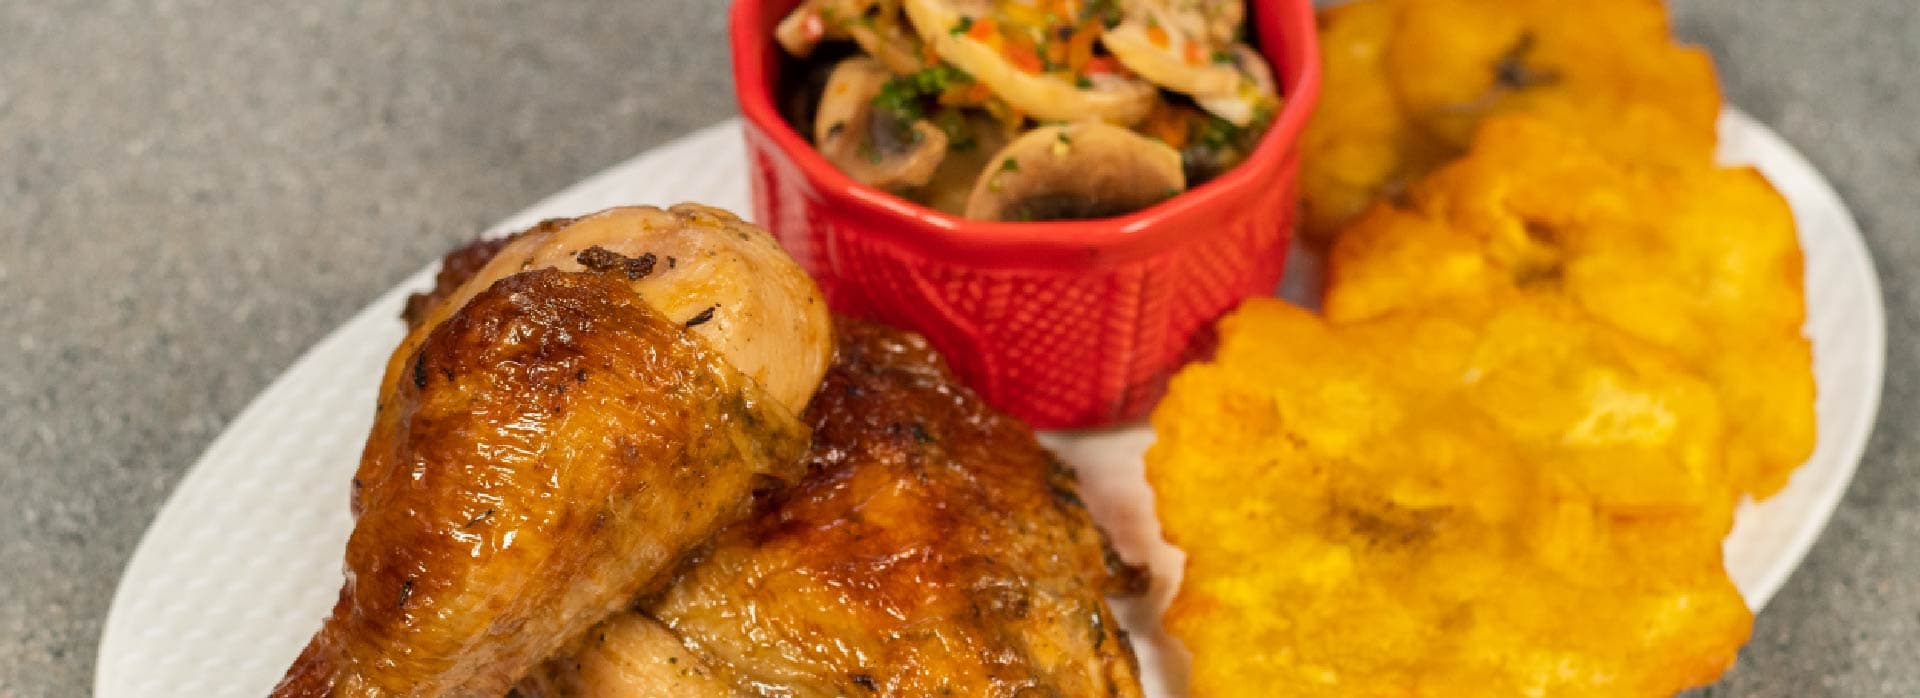 Recetas básicas de pollo en Airfryer